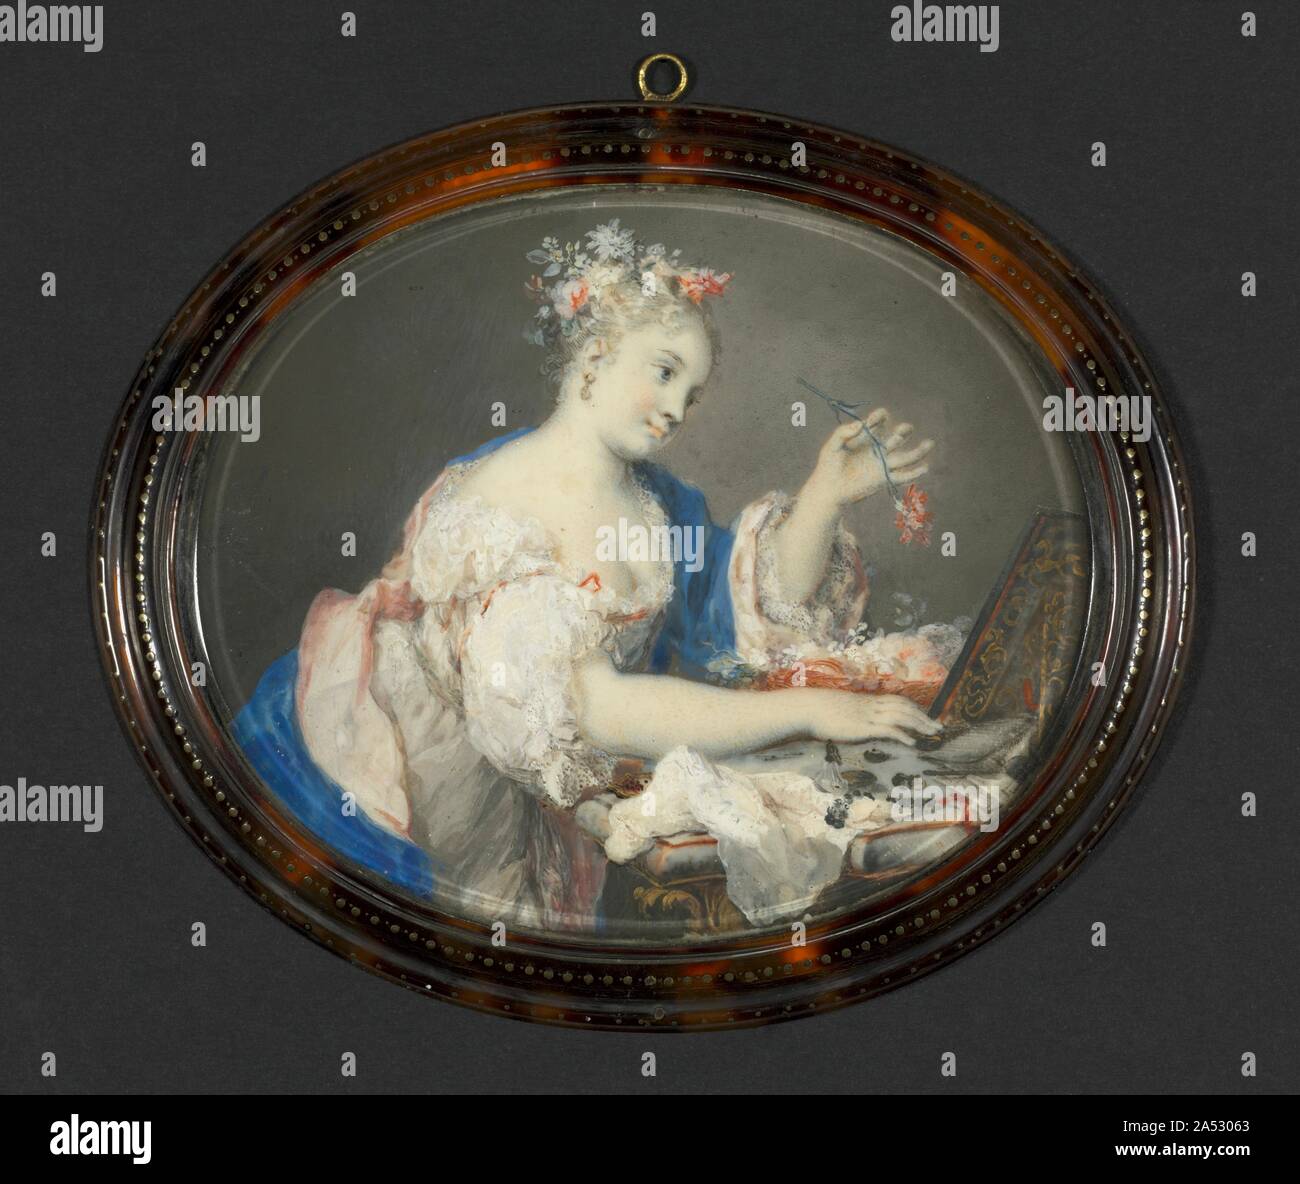 Eine Frau, Blumen im Haar, C. 1710. Wissenschaftler sind sich einig, dass sie Rosalba Carriera (1675-1757) die Kunst der Malerei Miniaturen auf Elfenbein entwickelt, an die Stelle der traditionellen Unterstützung von Pergament, einem feinen Haut. Zwar wurde sie berühmt als Pastell Maler, in ihrer frühen Karriere Carriera elfenbein Schnupftabak-Kästen, Behältern pulverisiertem Tabak um bis schnüffeln die Nasenlöcher - für Touristen zu halten gestaltet. Diese Miniatur wahrscheinlich diente als Deckel zu einem Schnupftabak, durch seine elliptische Form im Gegensatz zu den ovalen oder gelegentlich runde Formen der meisten anderen Miniaturen. Obwohl Maler Stockfoto